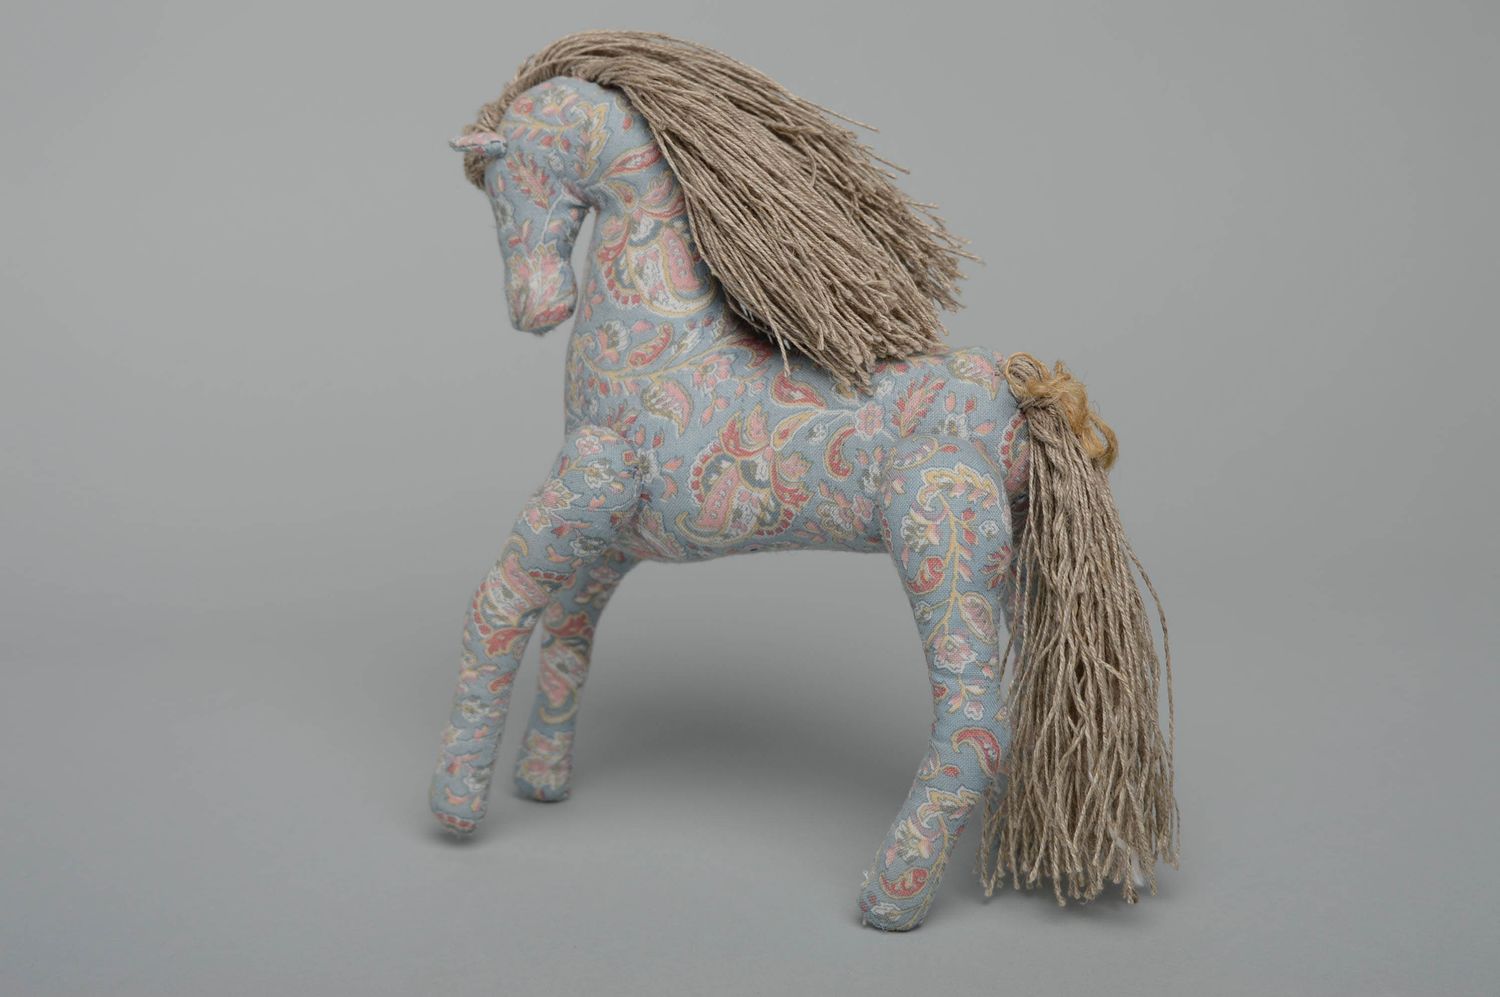 Textil Kuscheltier Pferd mit prächtiger Mähne foto 1